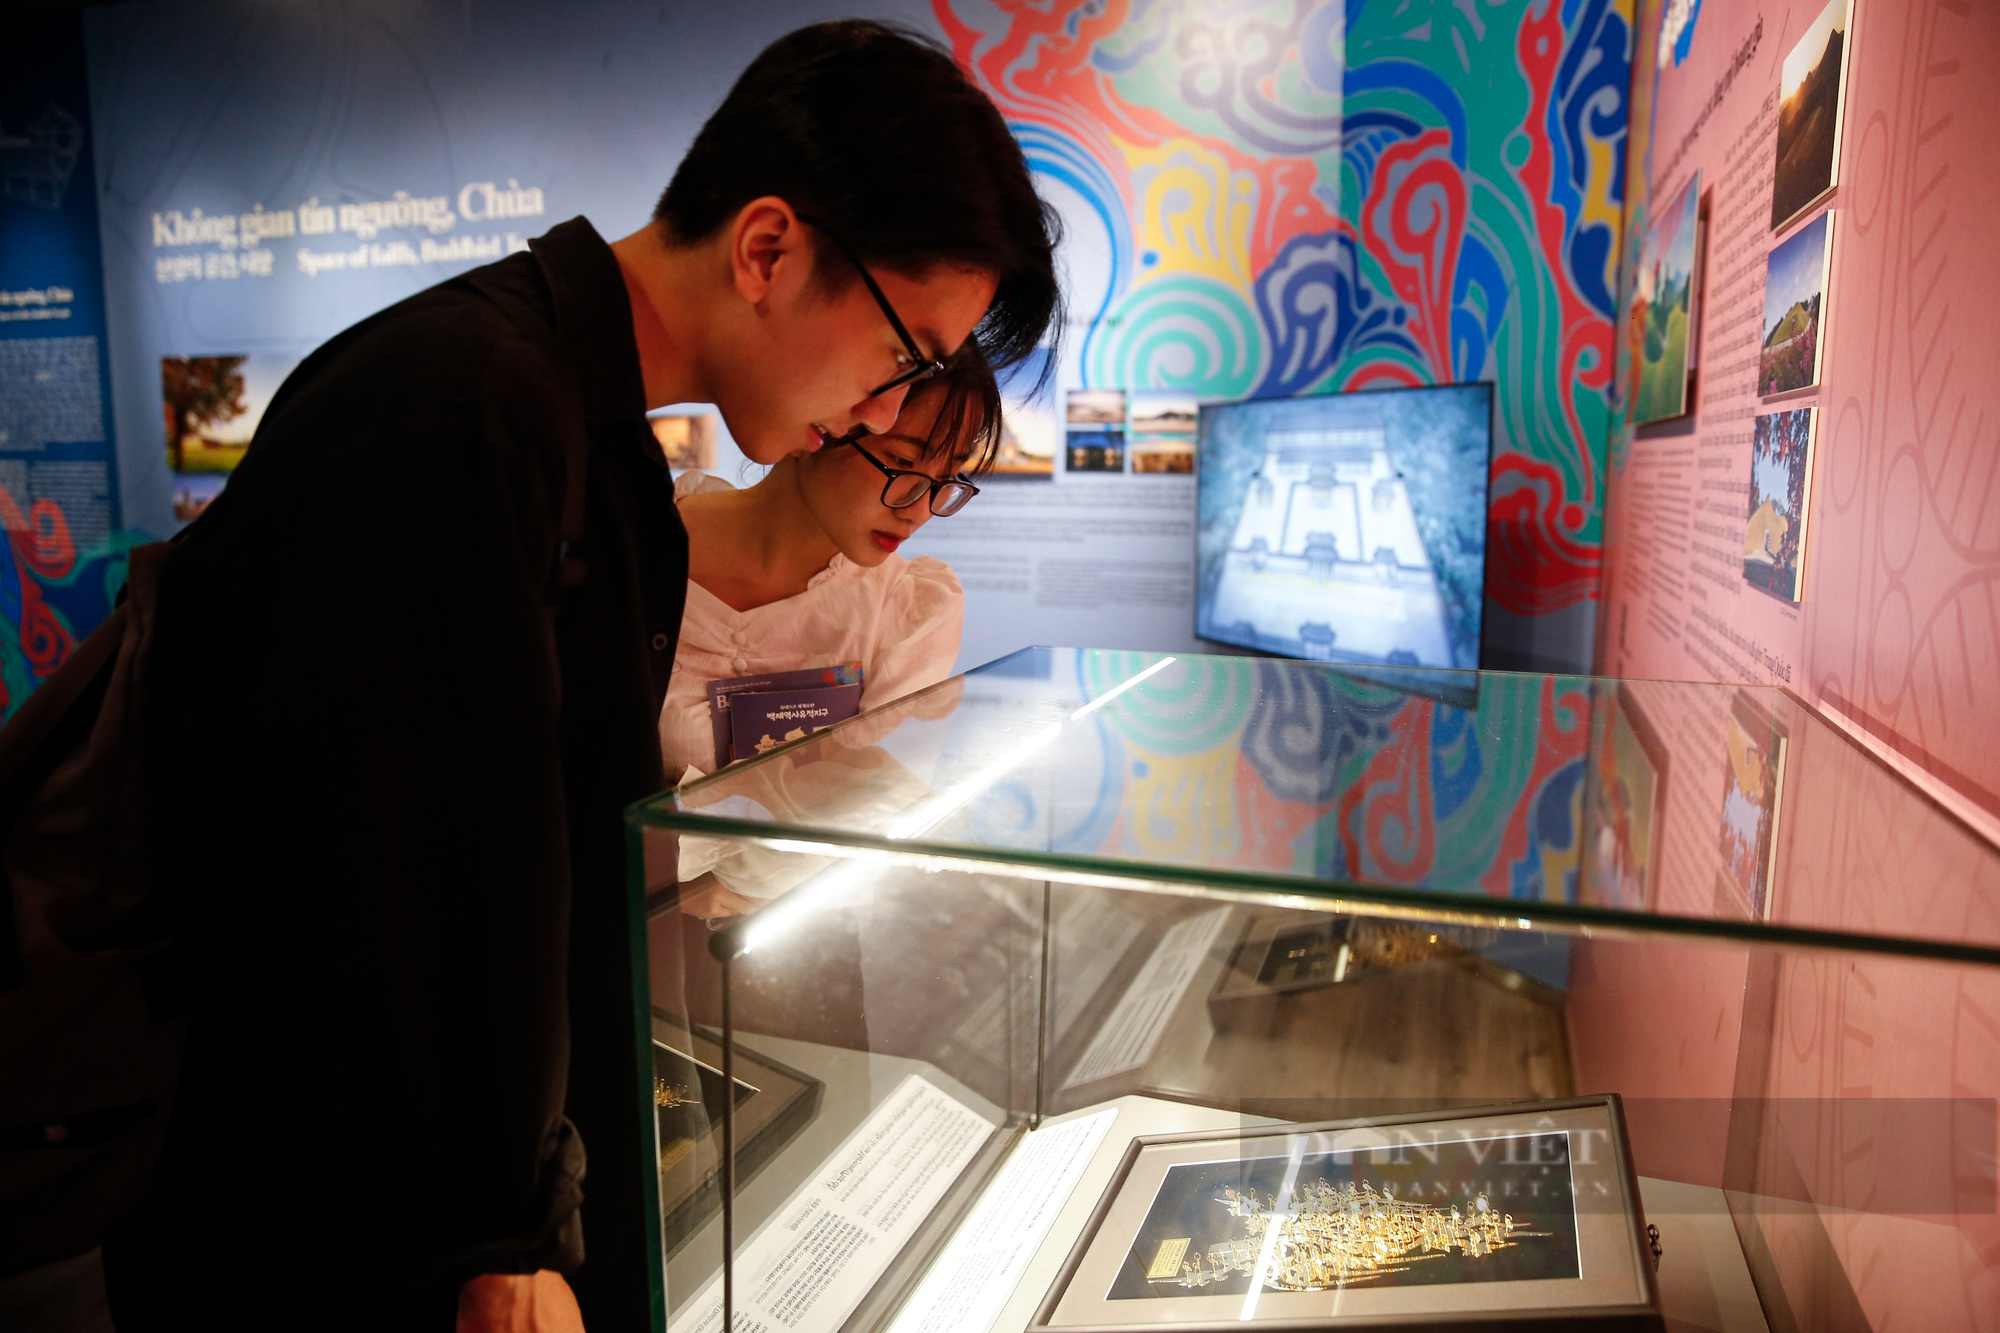 Ngắm 3 bảo vật Quốc gia Hàn Quốc lần đầu được giới thiệu tới công chúng Việt Nam - Ảnh 7.